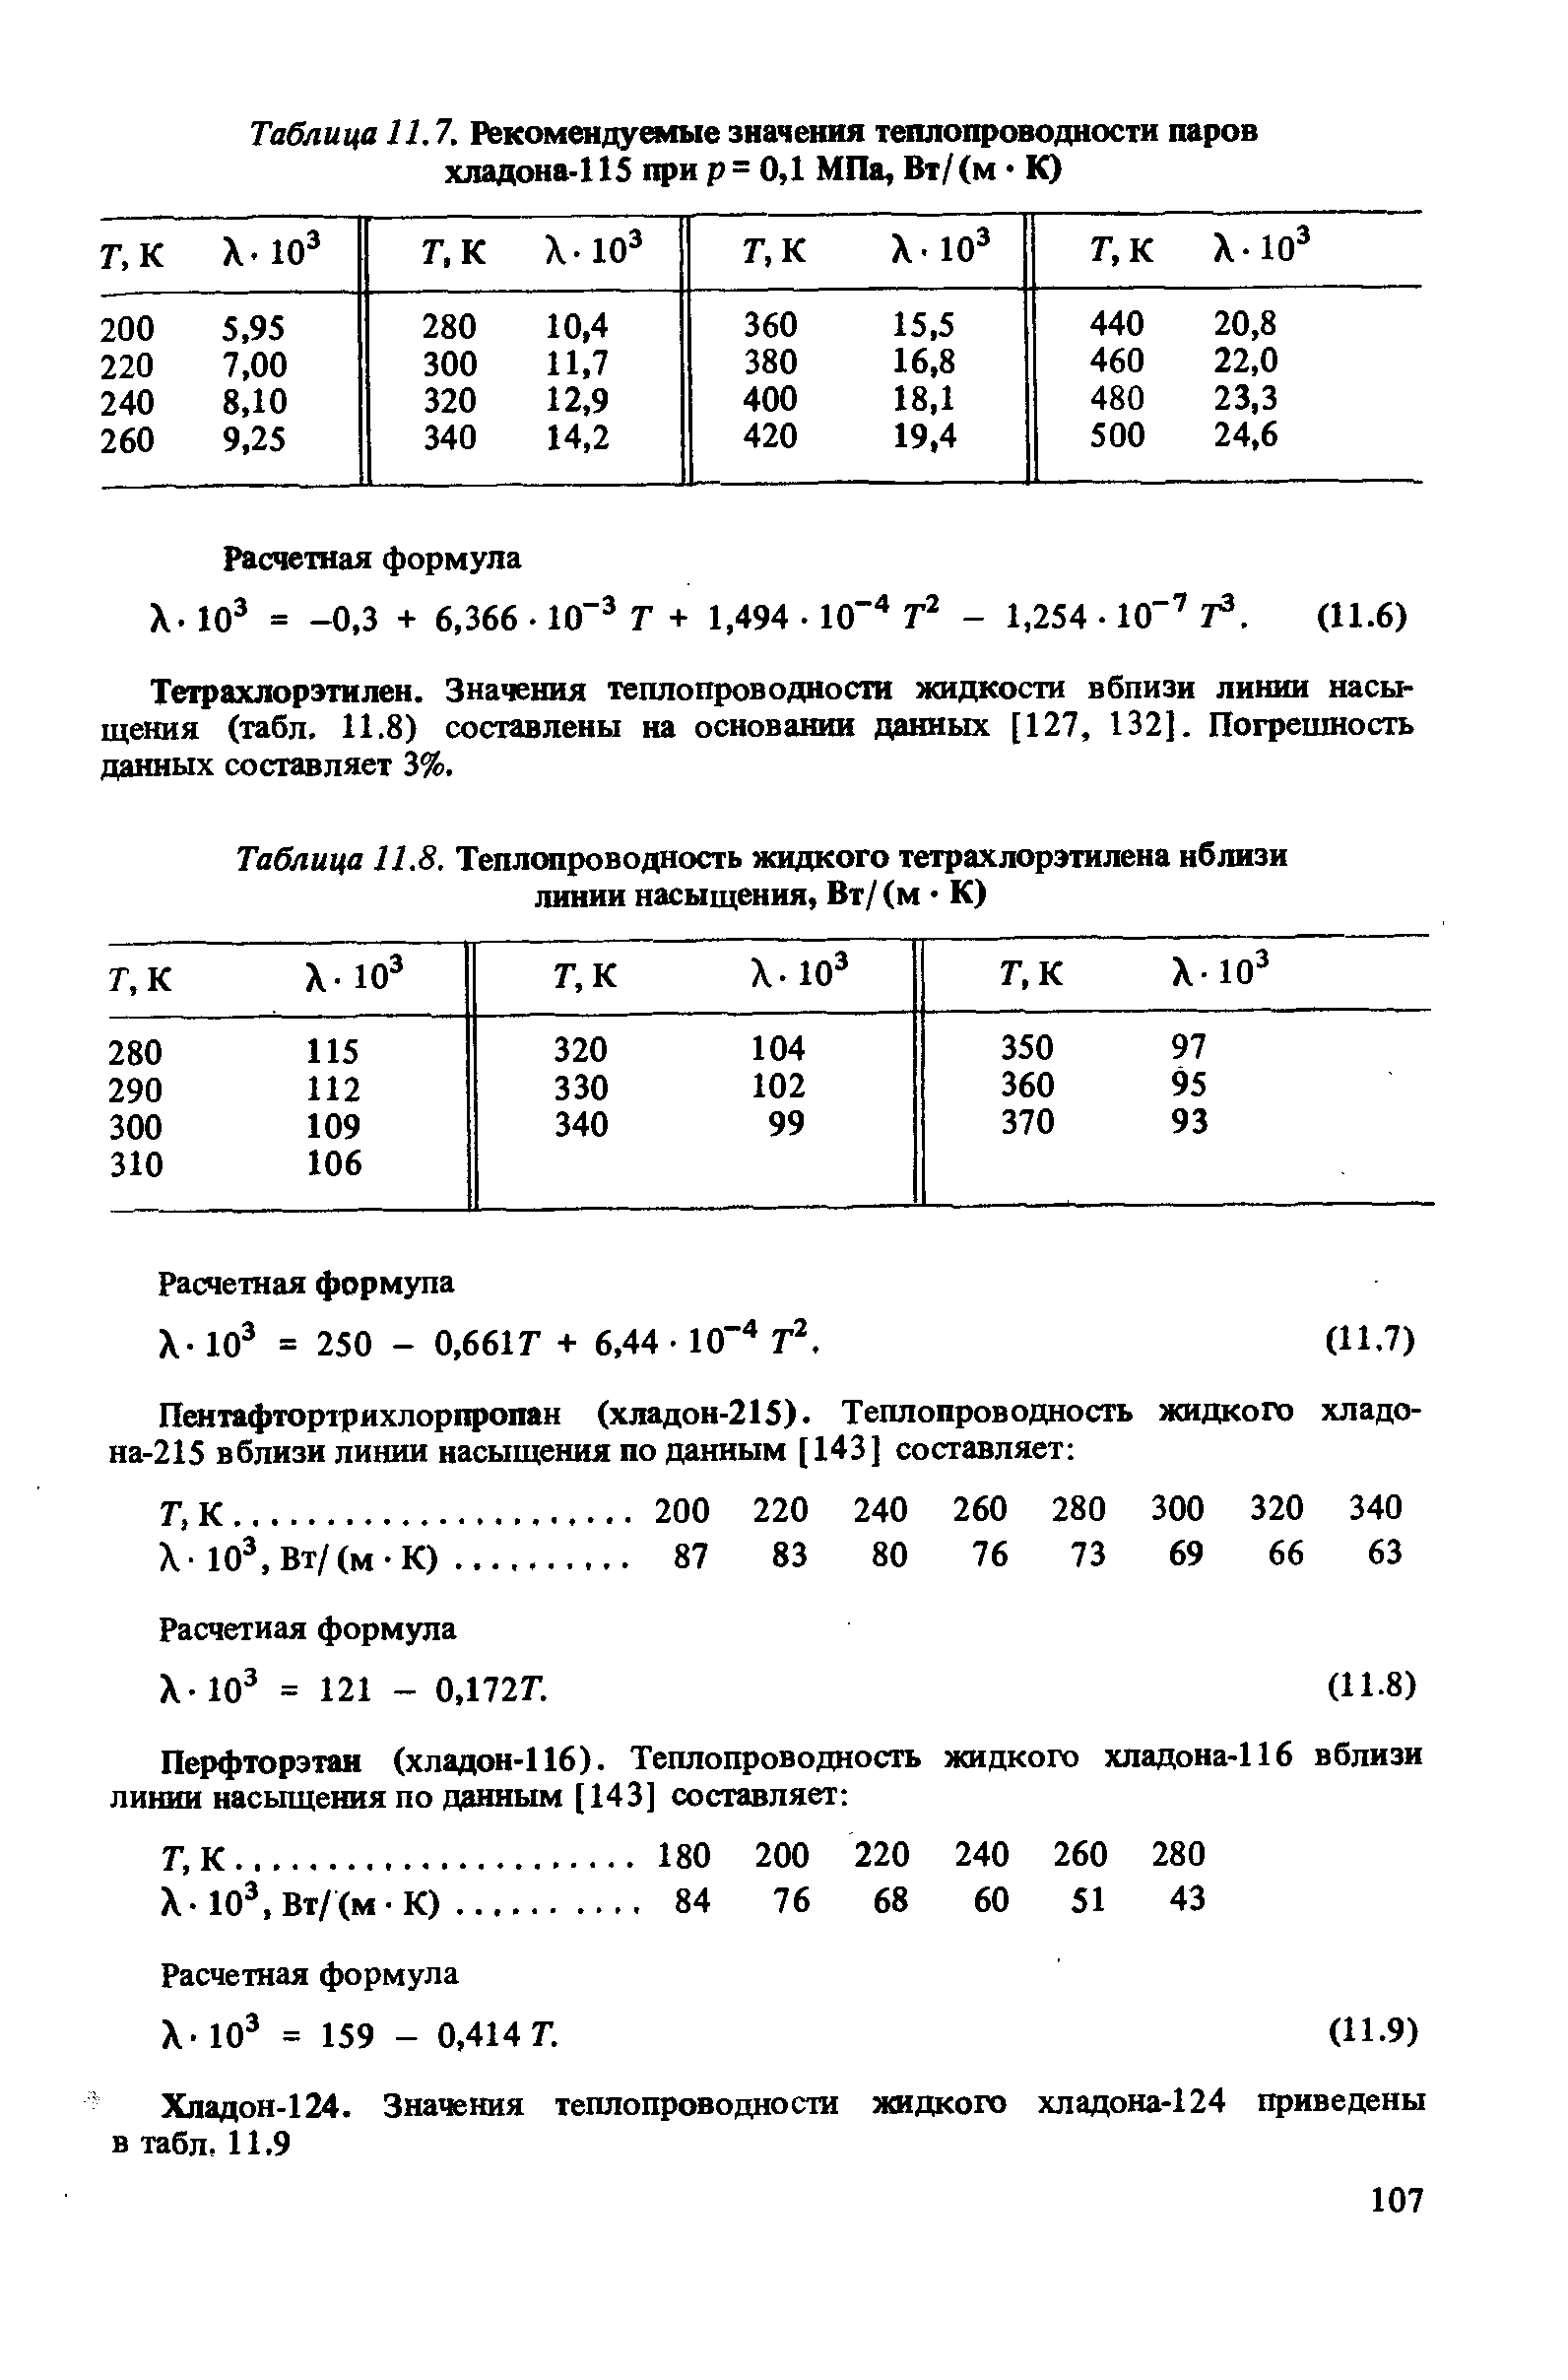 Таблица 11.7. Рекомендуоные значения теплопроводности паров хладона-115 при р= 0,1 МПа, Вт/(м К)
